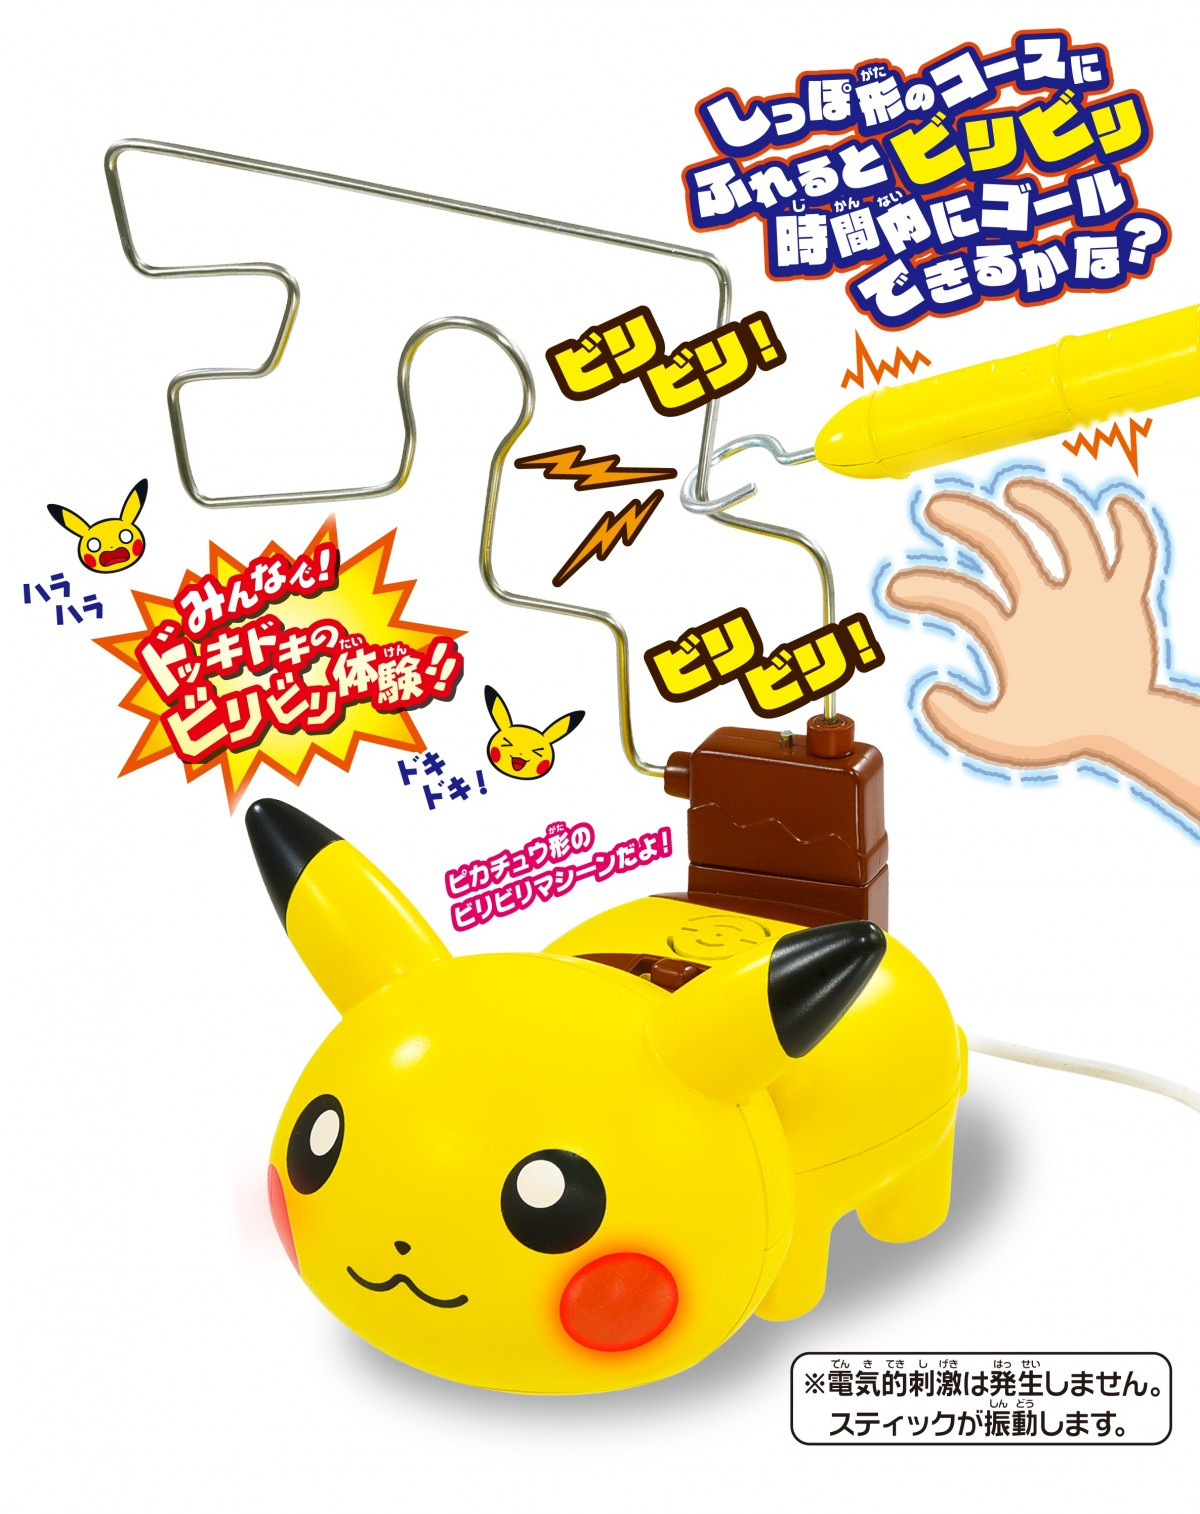 ピカチュウの ビリビリ 体感玩具4 24発売 電気的刺激は発生せず Oricon News